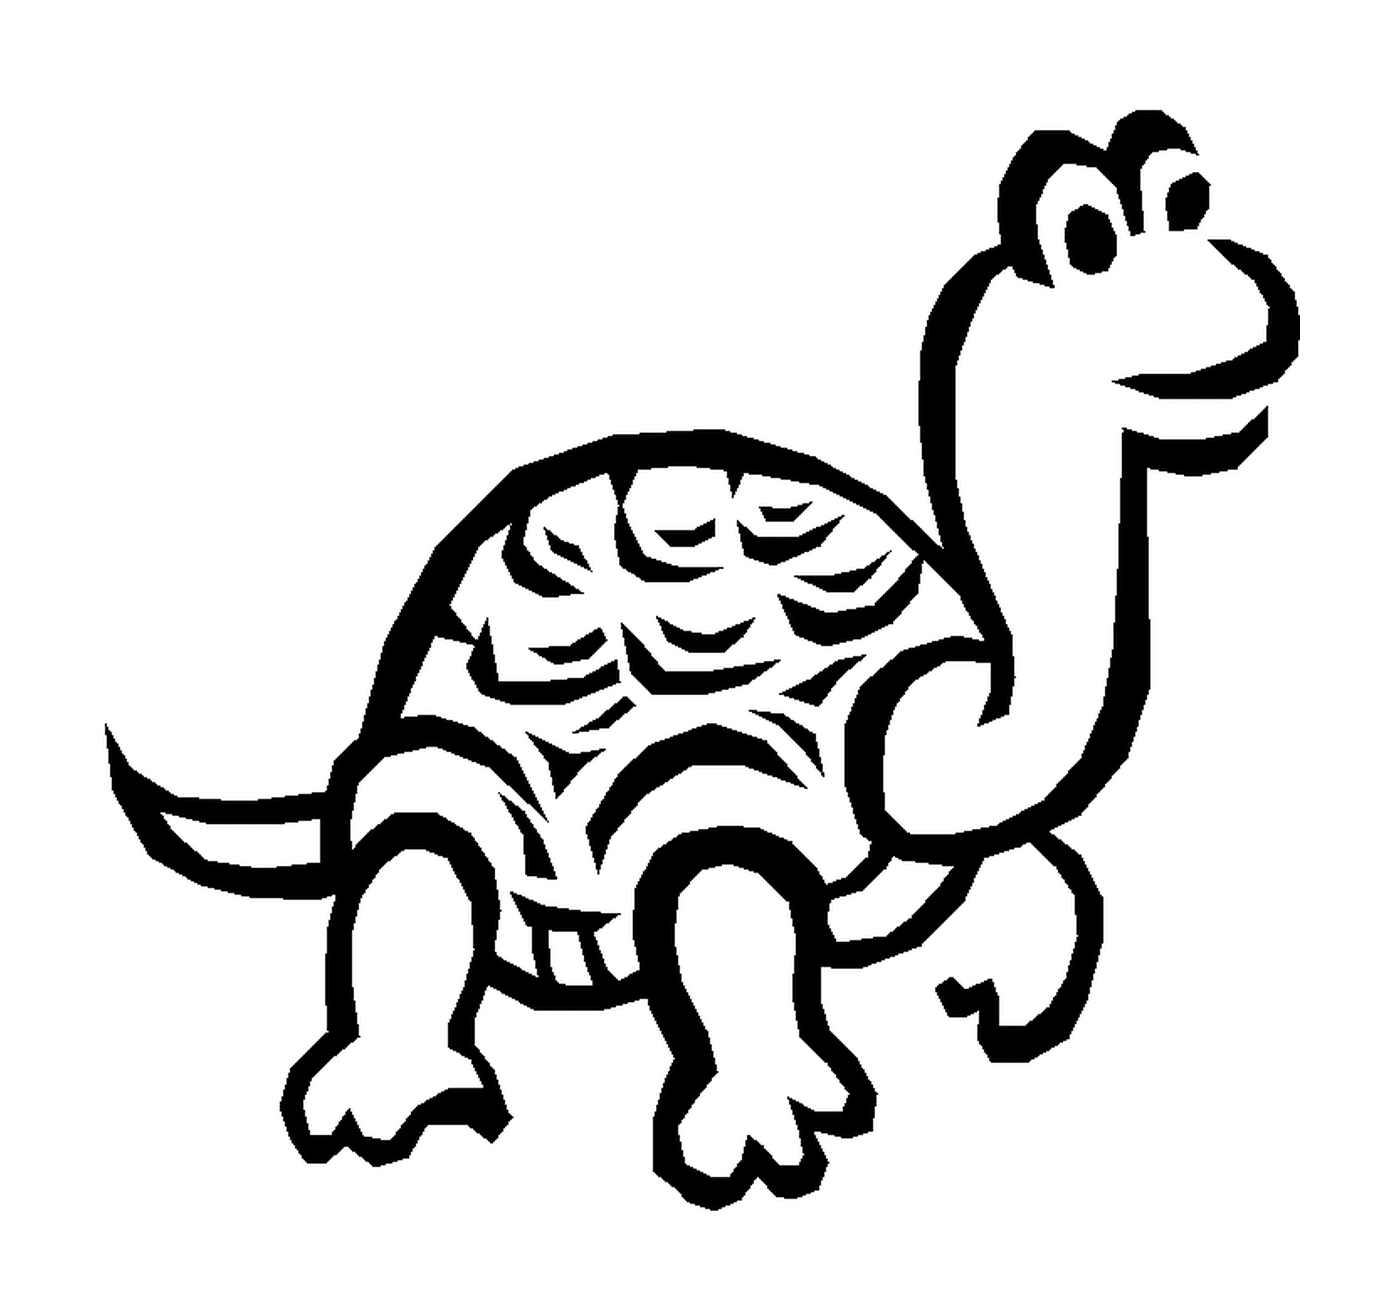  Schildkröte mit einem großen Hals 